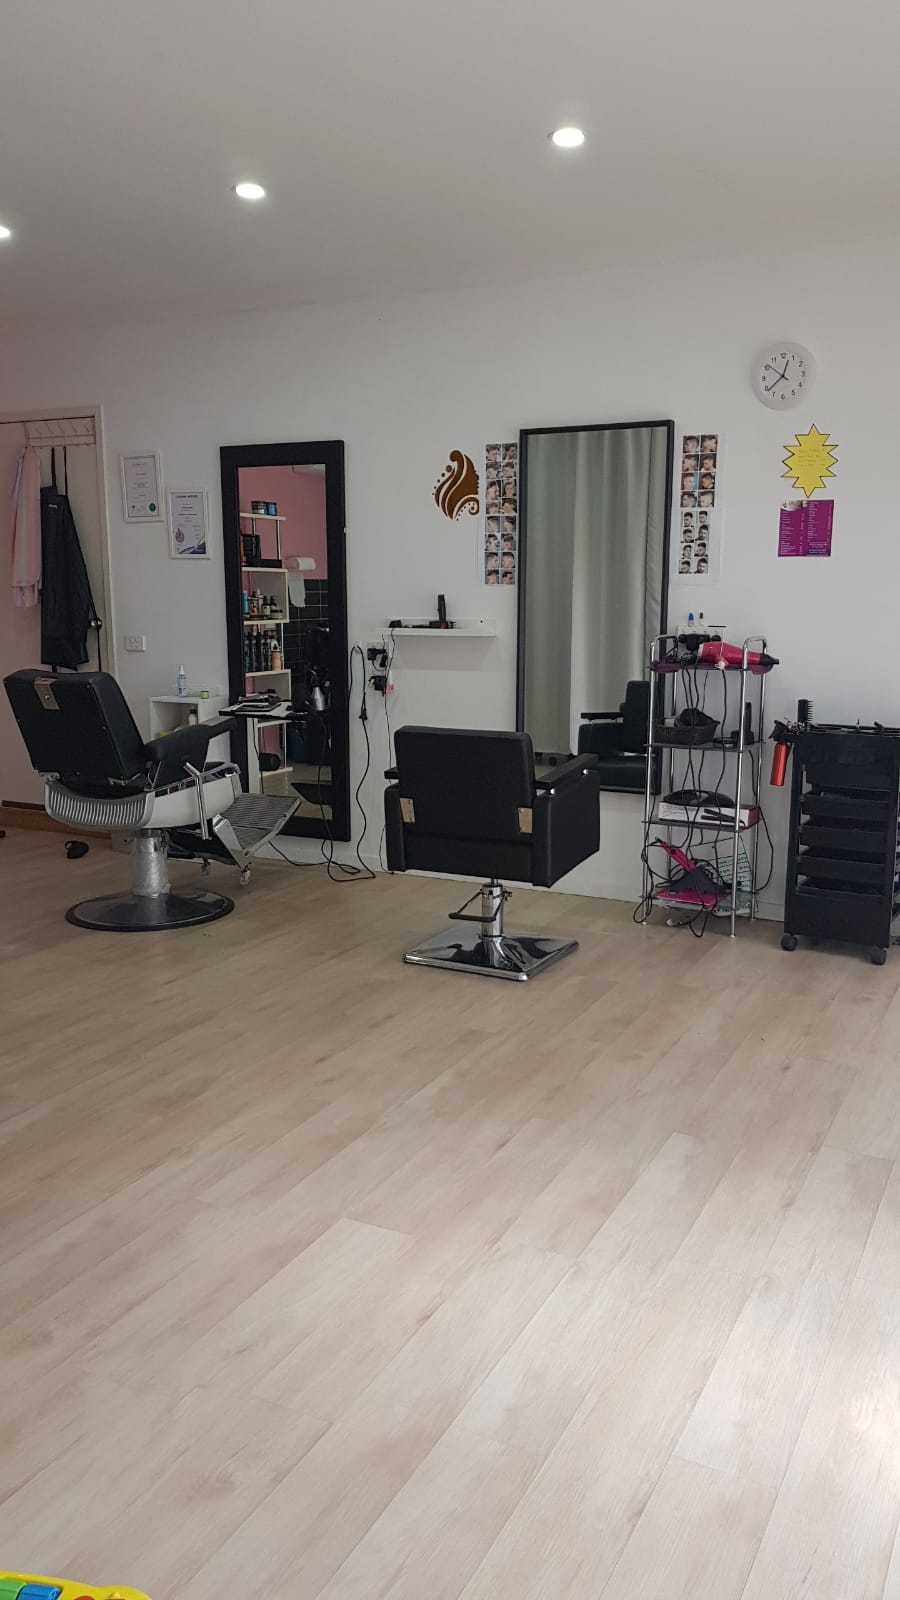 Enhance Hair & Beauty | 28 Chatham Ave, Tarneit VIC 3029, Australia | Phone: 0405 721 438